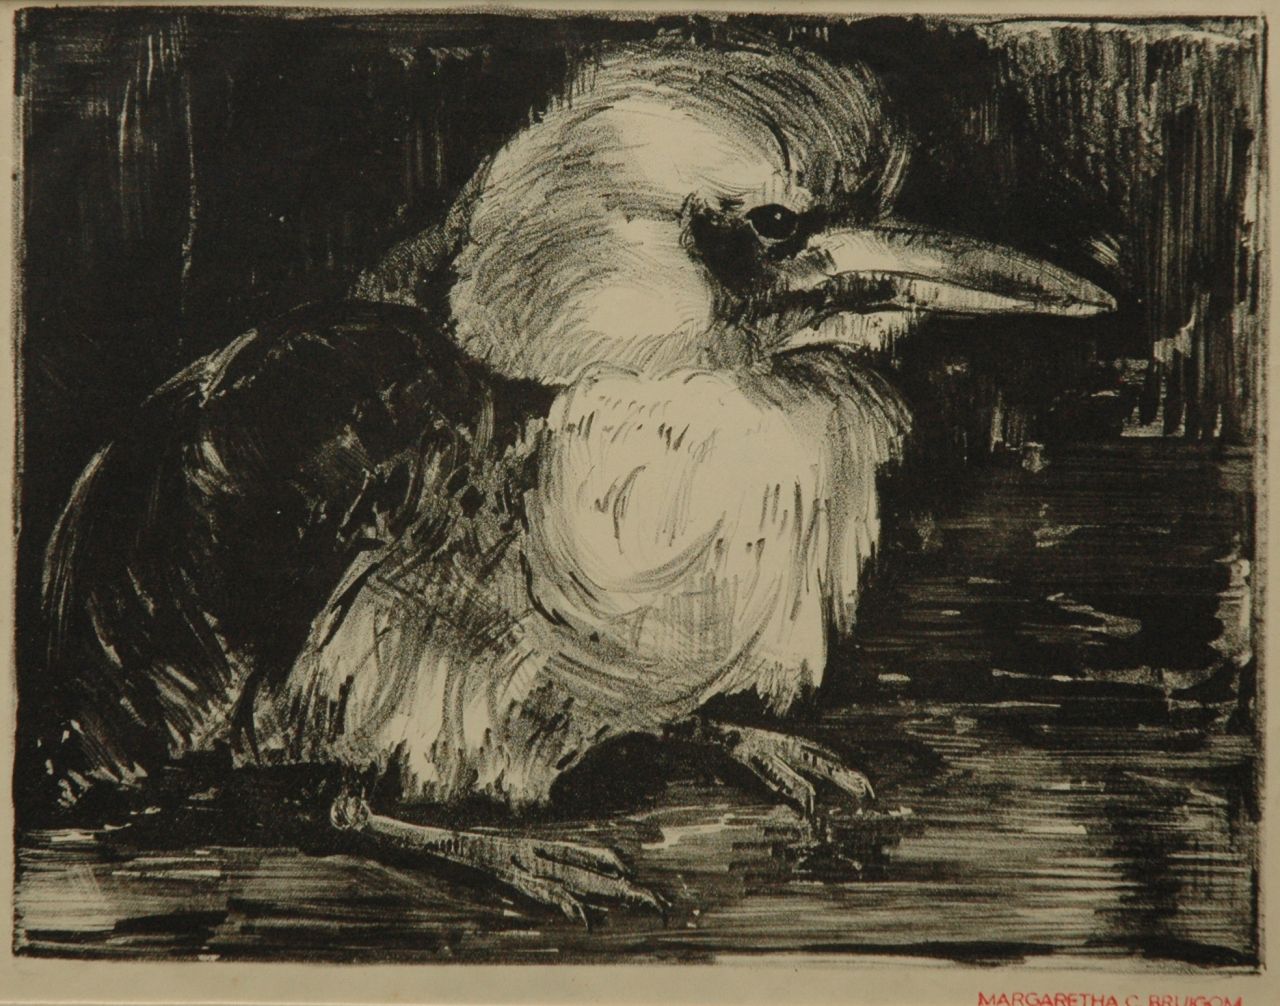 Bruigom M.C.  | Margaretha Cornelia 'Greta' Bruigom | Grafiek te koop aangeboden | Jonge vogel, litho 22,7 x 29,4 cm, gesigneerd rechtsonder met kunstenaarsstempel